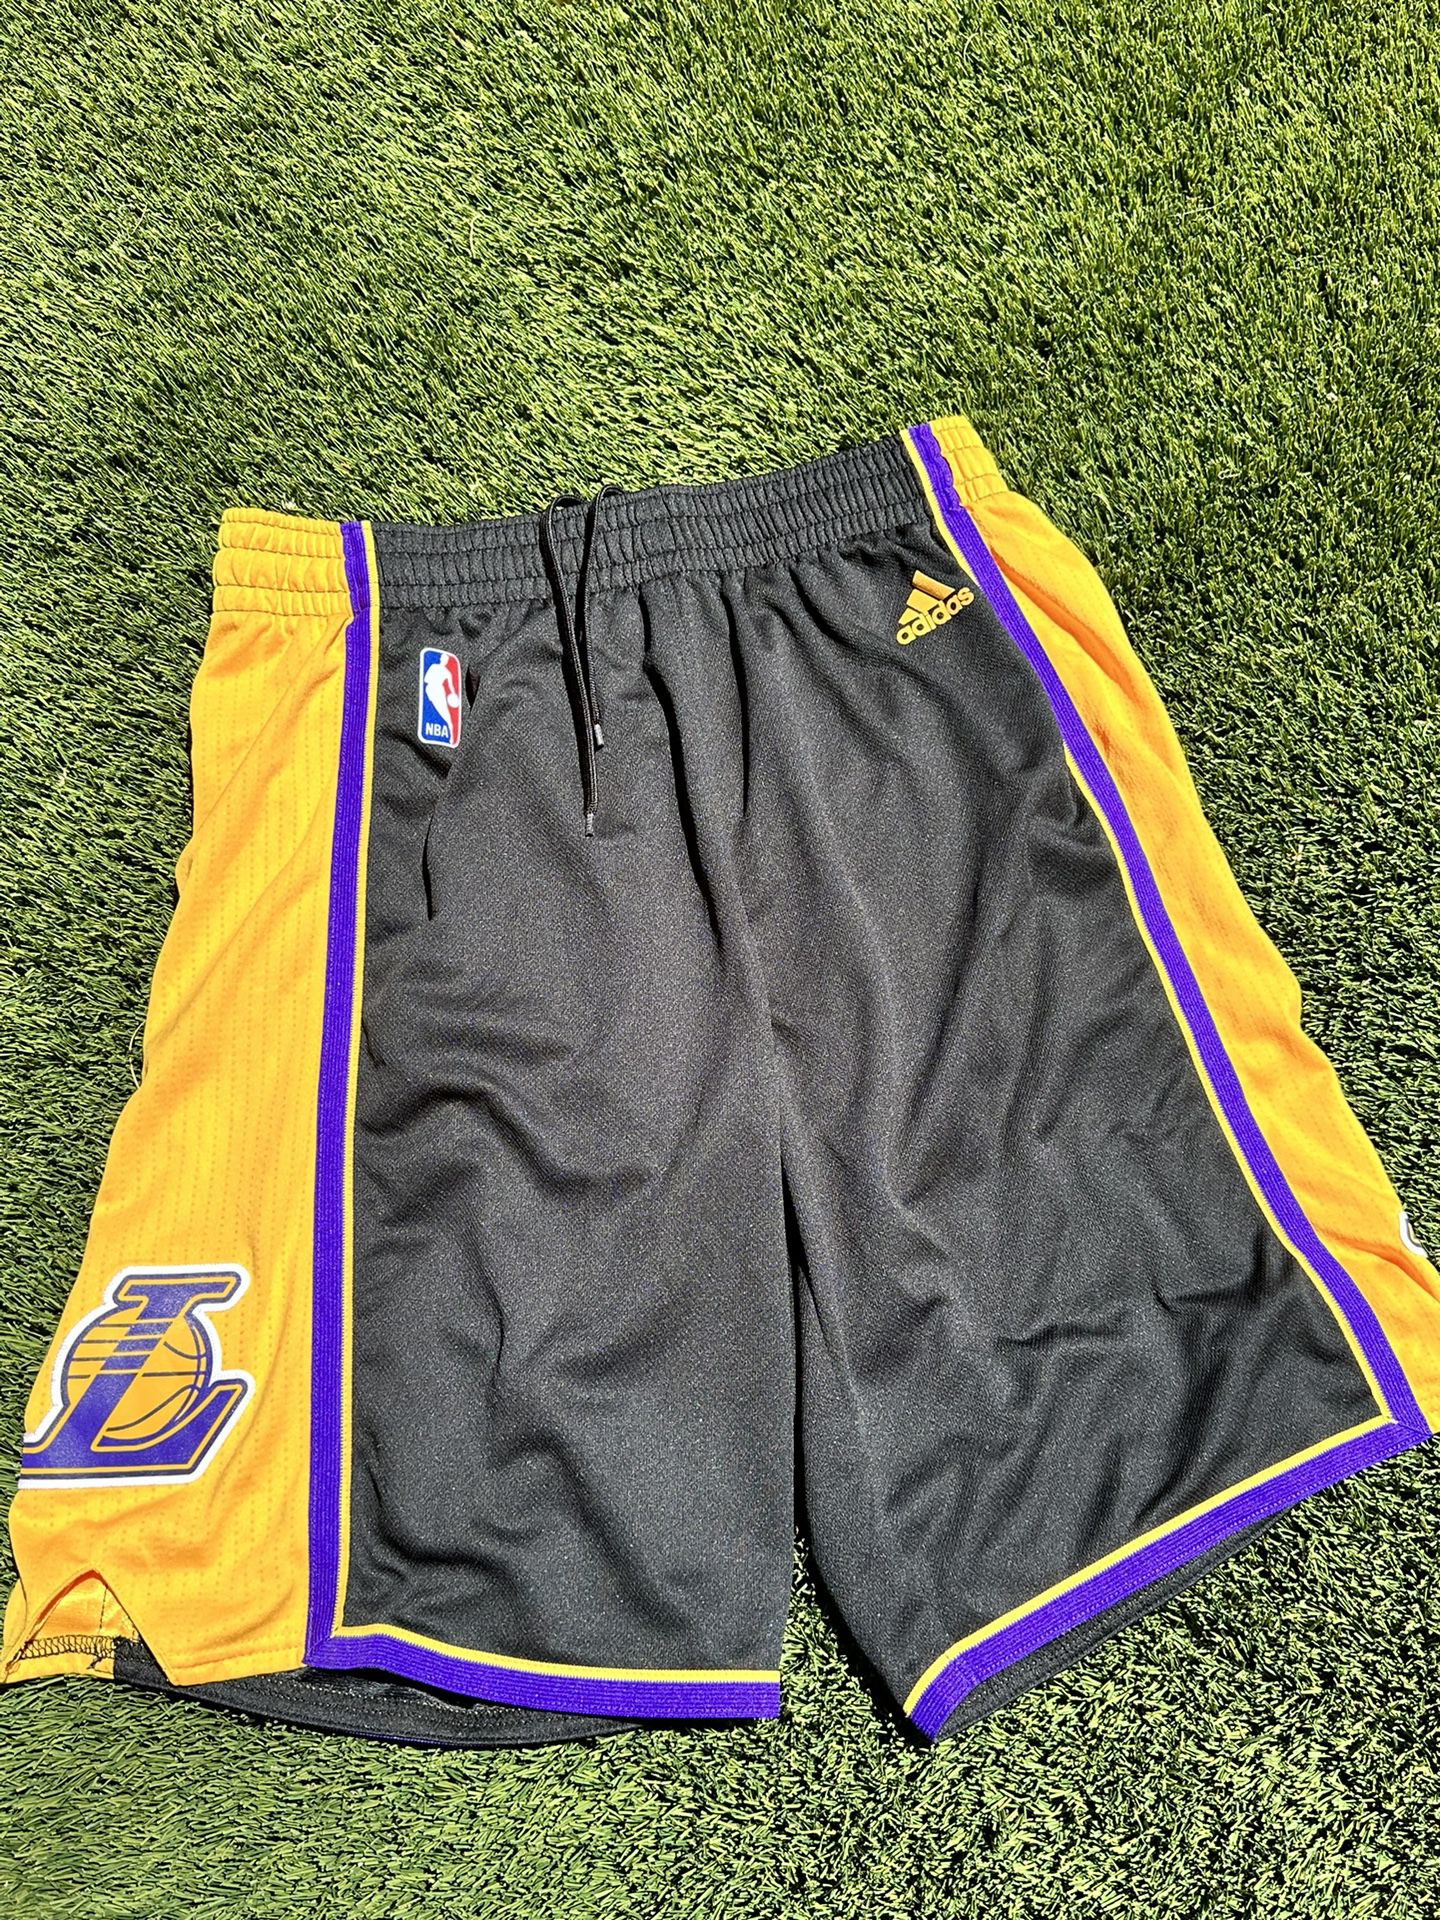 black lakers basketball shorts